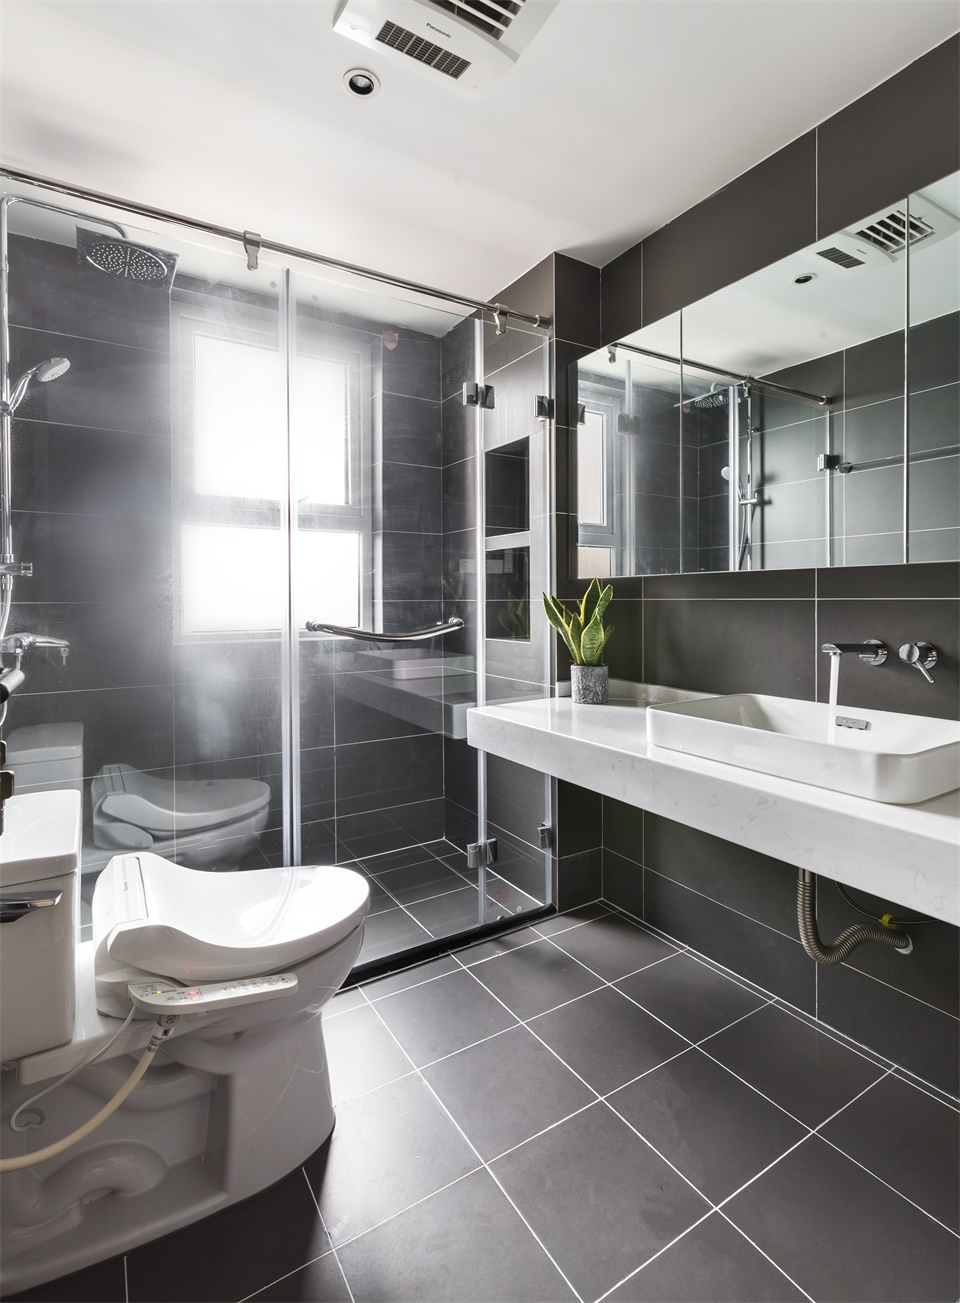 卫浴空间保持干湿分离设计，空间布局规整严谨，一字型白色洗手台视觉效果更加出众，加之明镜衬托，卫浴空间